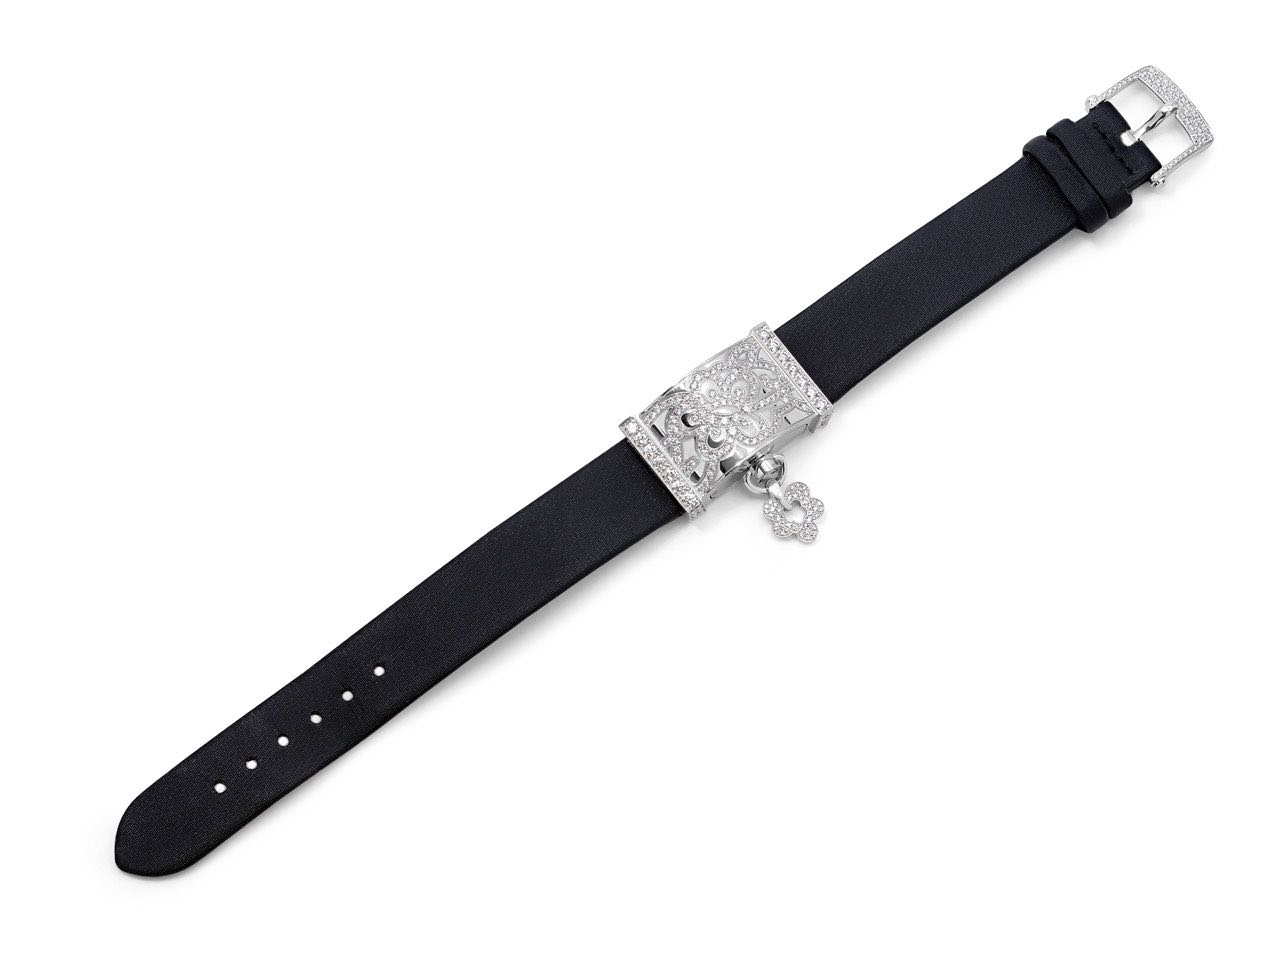 Louis Vuitton dentelle One Row Bracelet, White Gold and Diamonds Grey. Size S